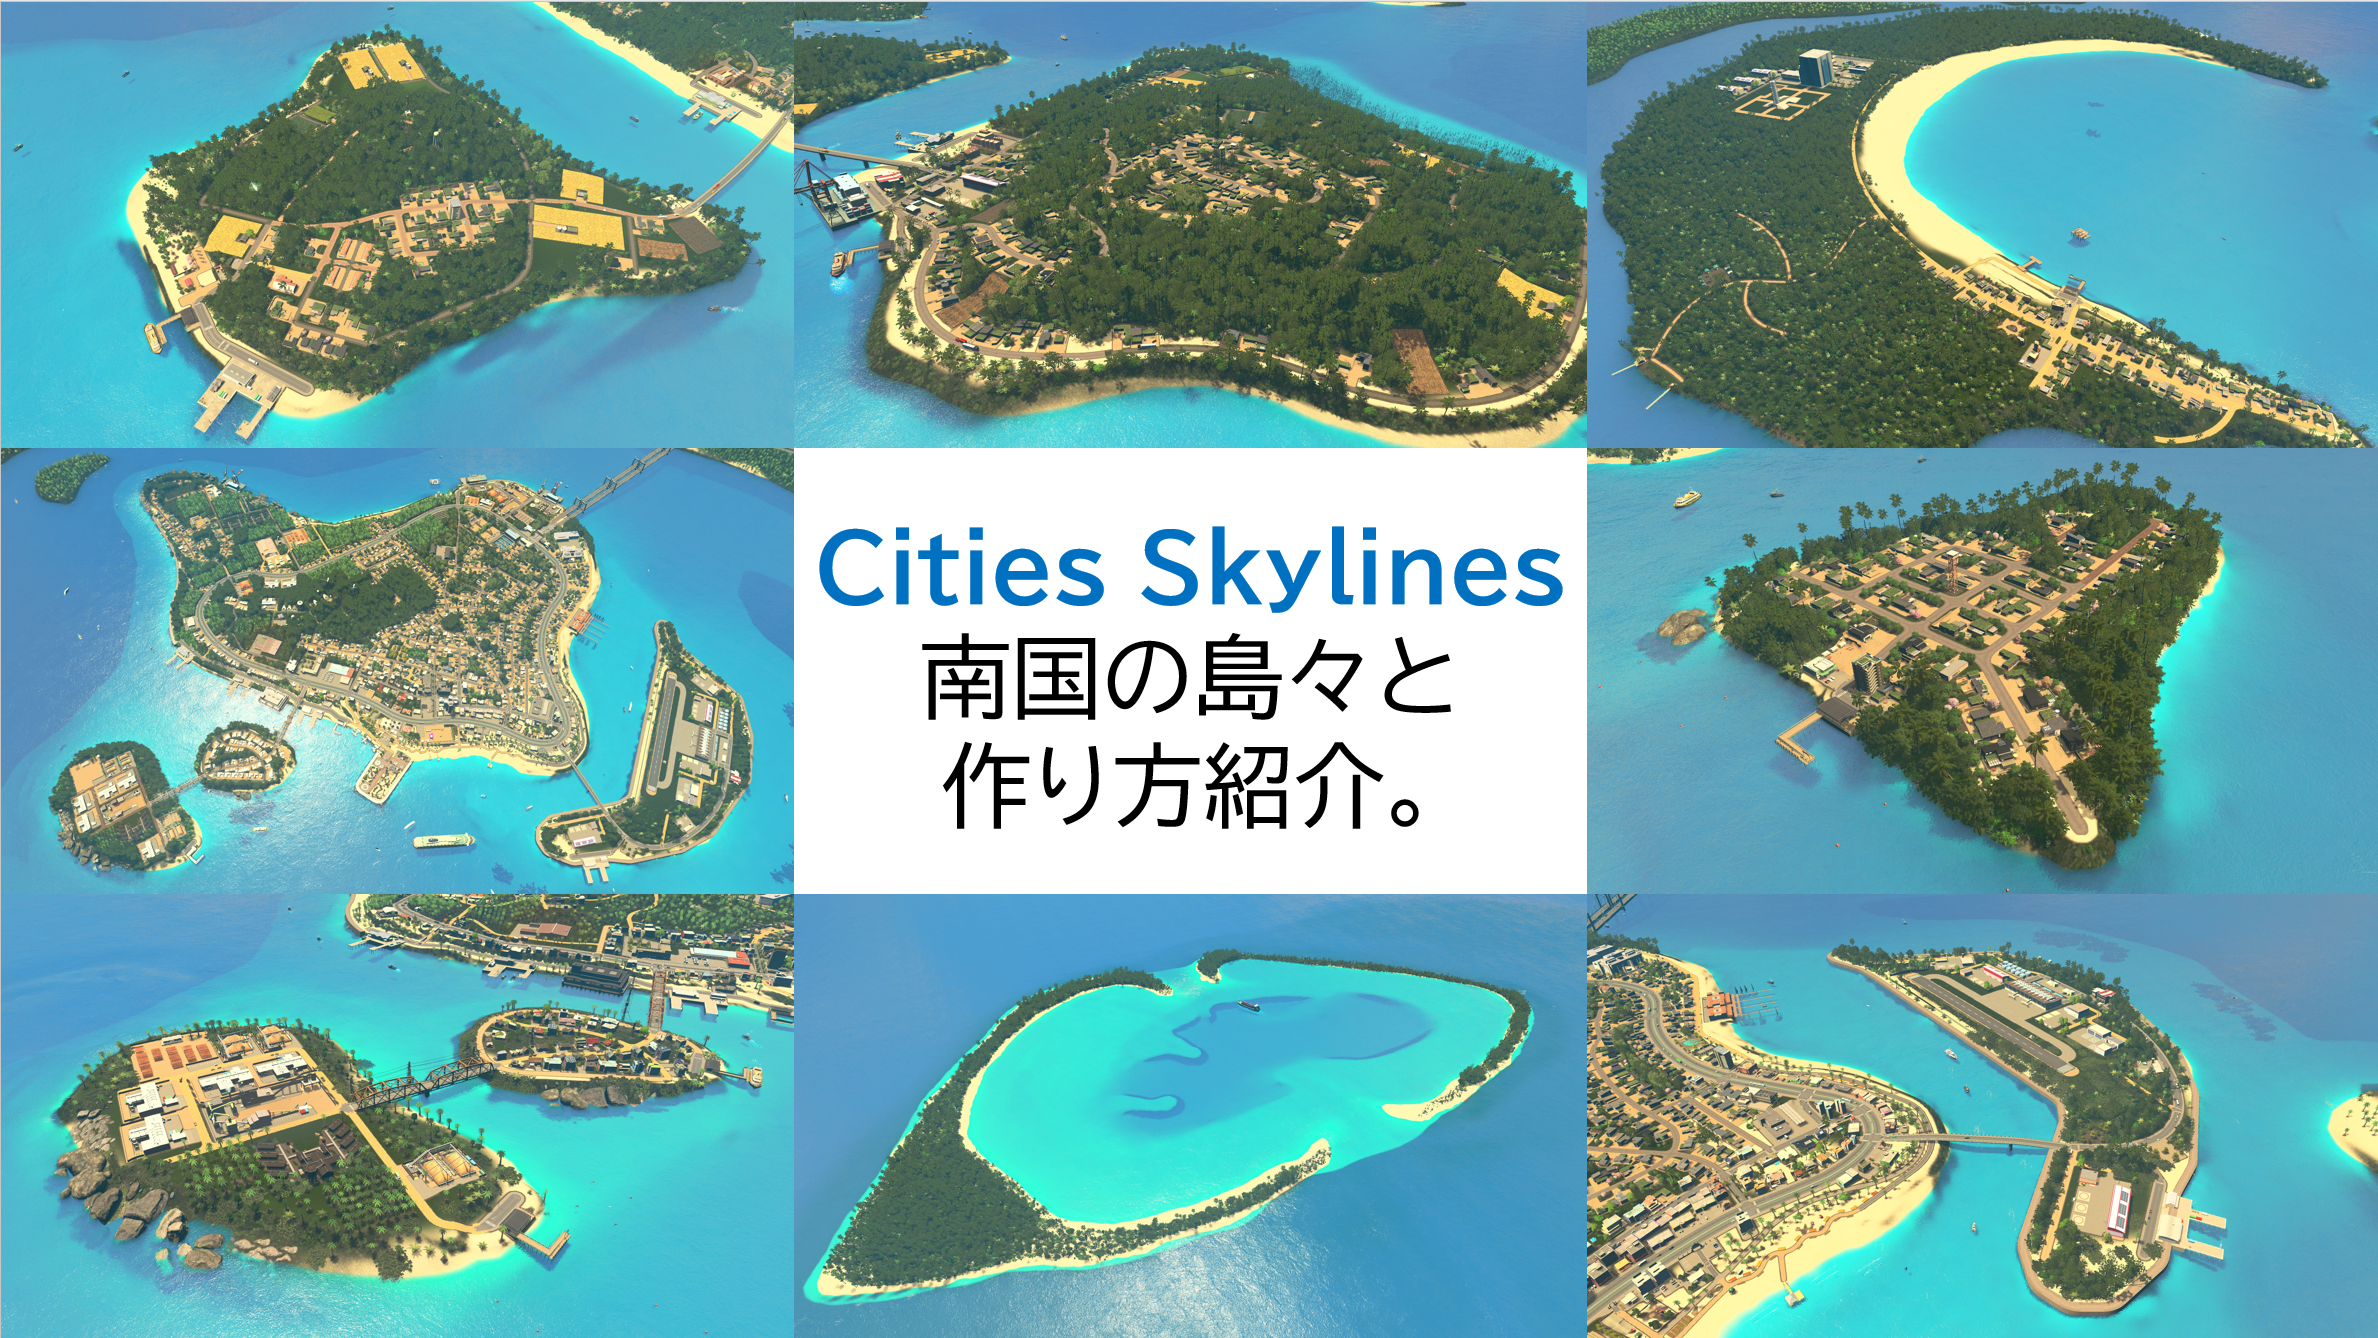 Cities Skylines で南国の開発をする話 にゃんこのブログ